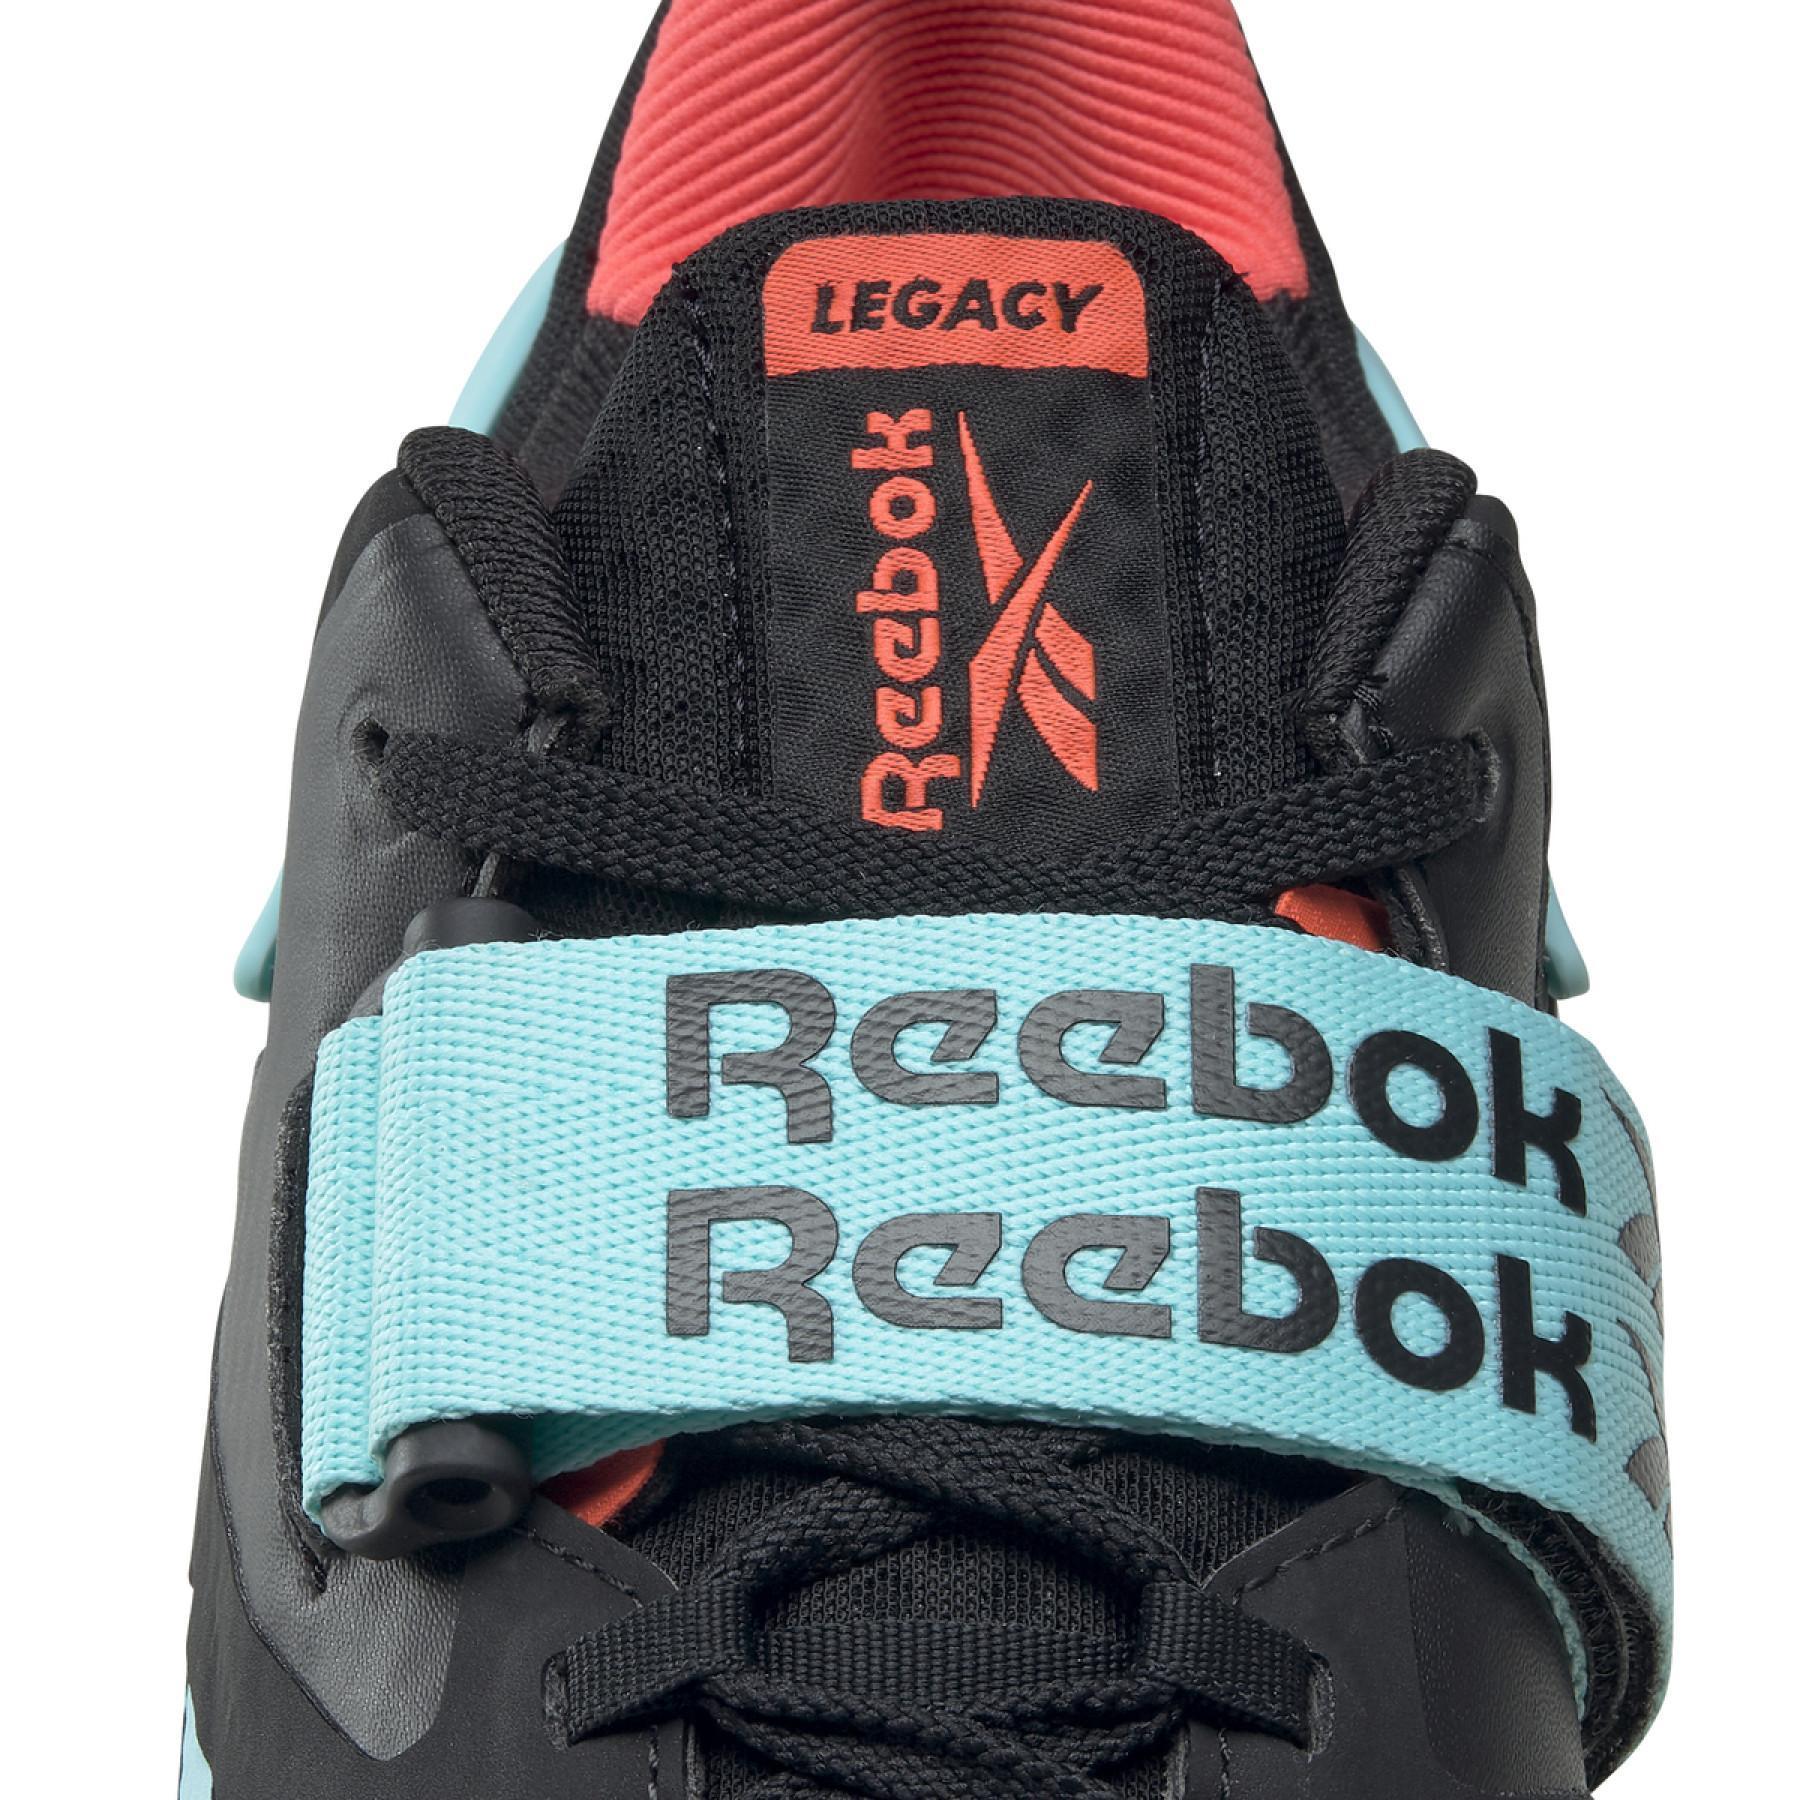 Sapatos Reebok Legacy Lifter II